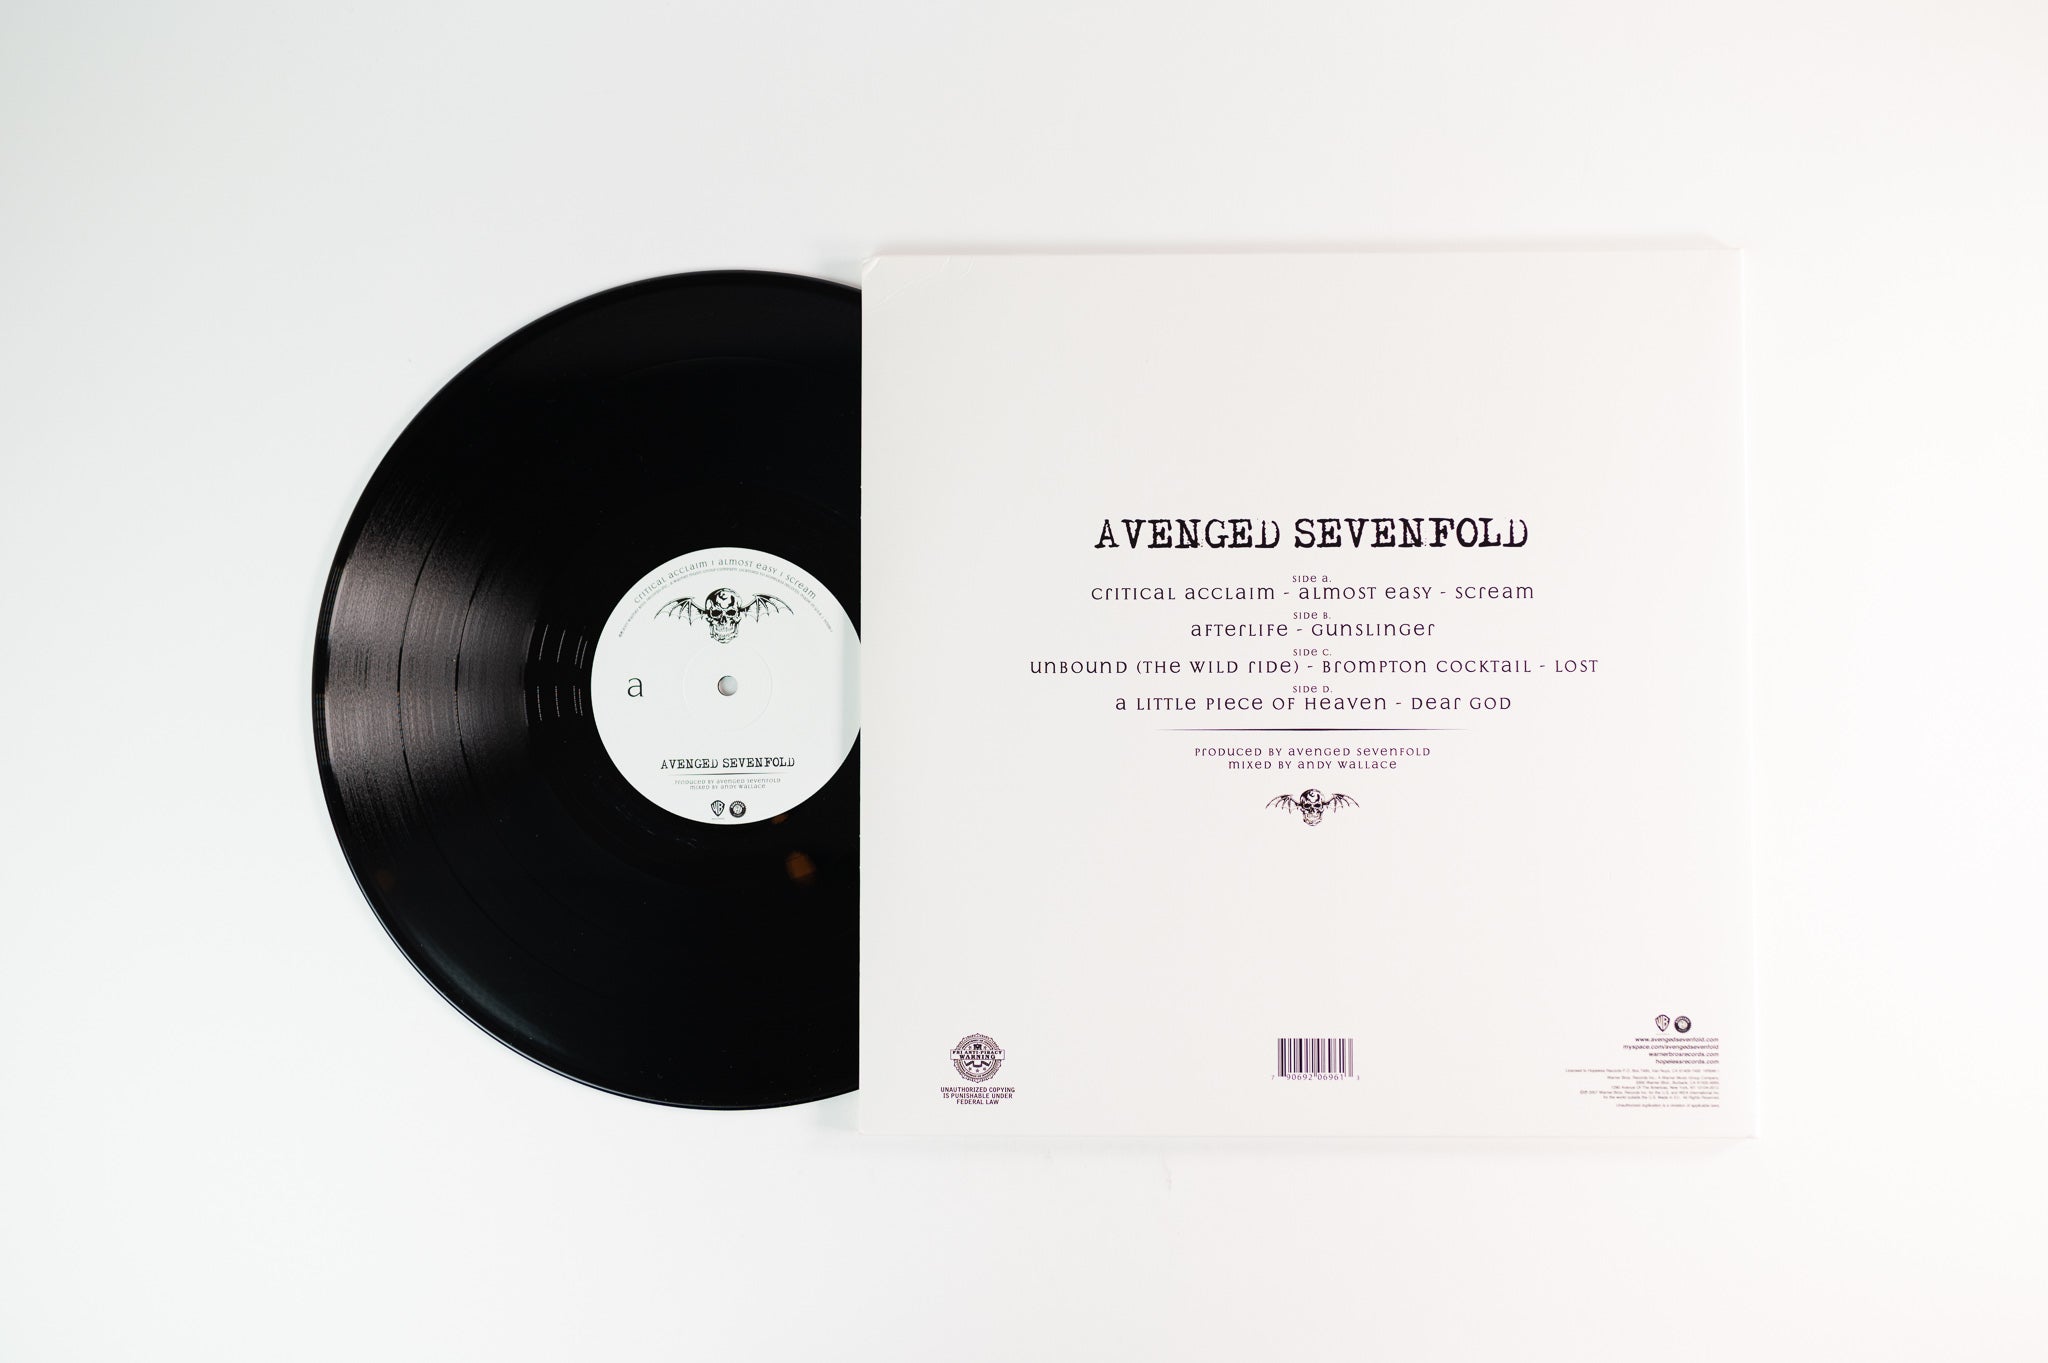 Avenged Sevenfold - Avenged Sevenfold on Hopeless Reissue